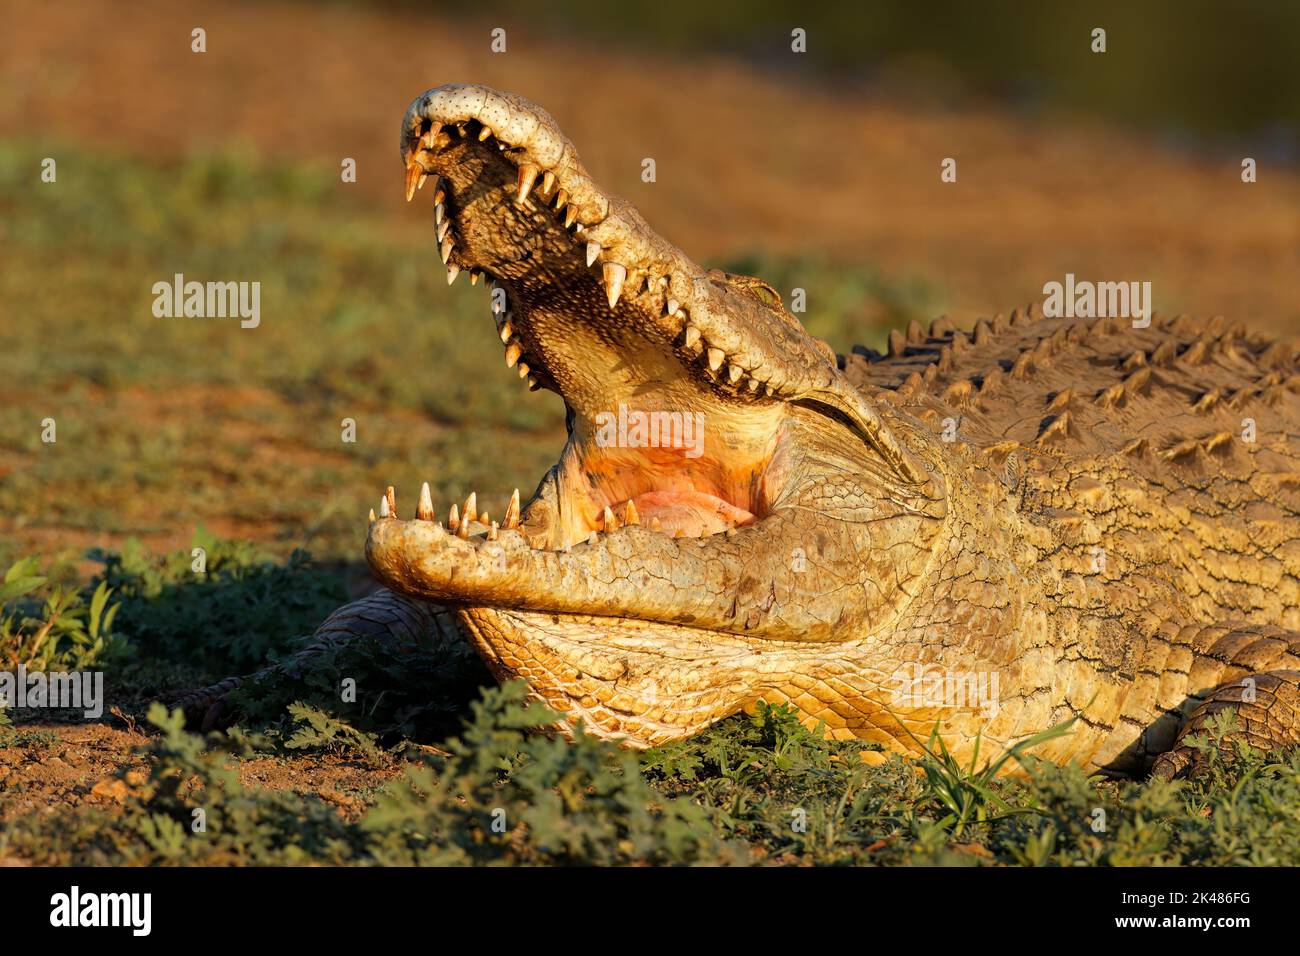 Retrato de un cocodrilo grande del Nilo (Crocodylus niloticus) con mandíbulas abiertas, Parque Nacional Kruger, Sudáfrica Foto de stock